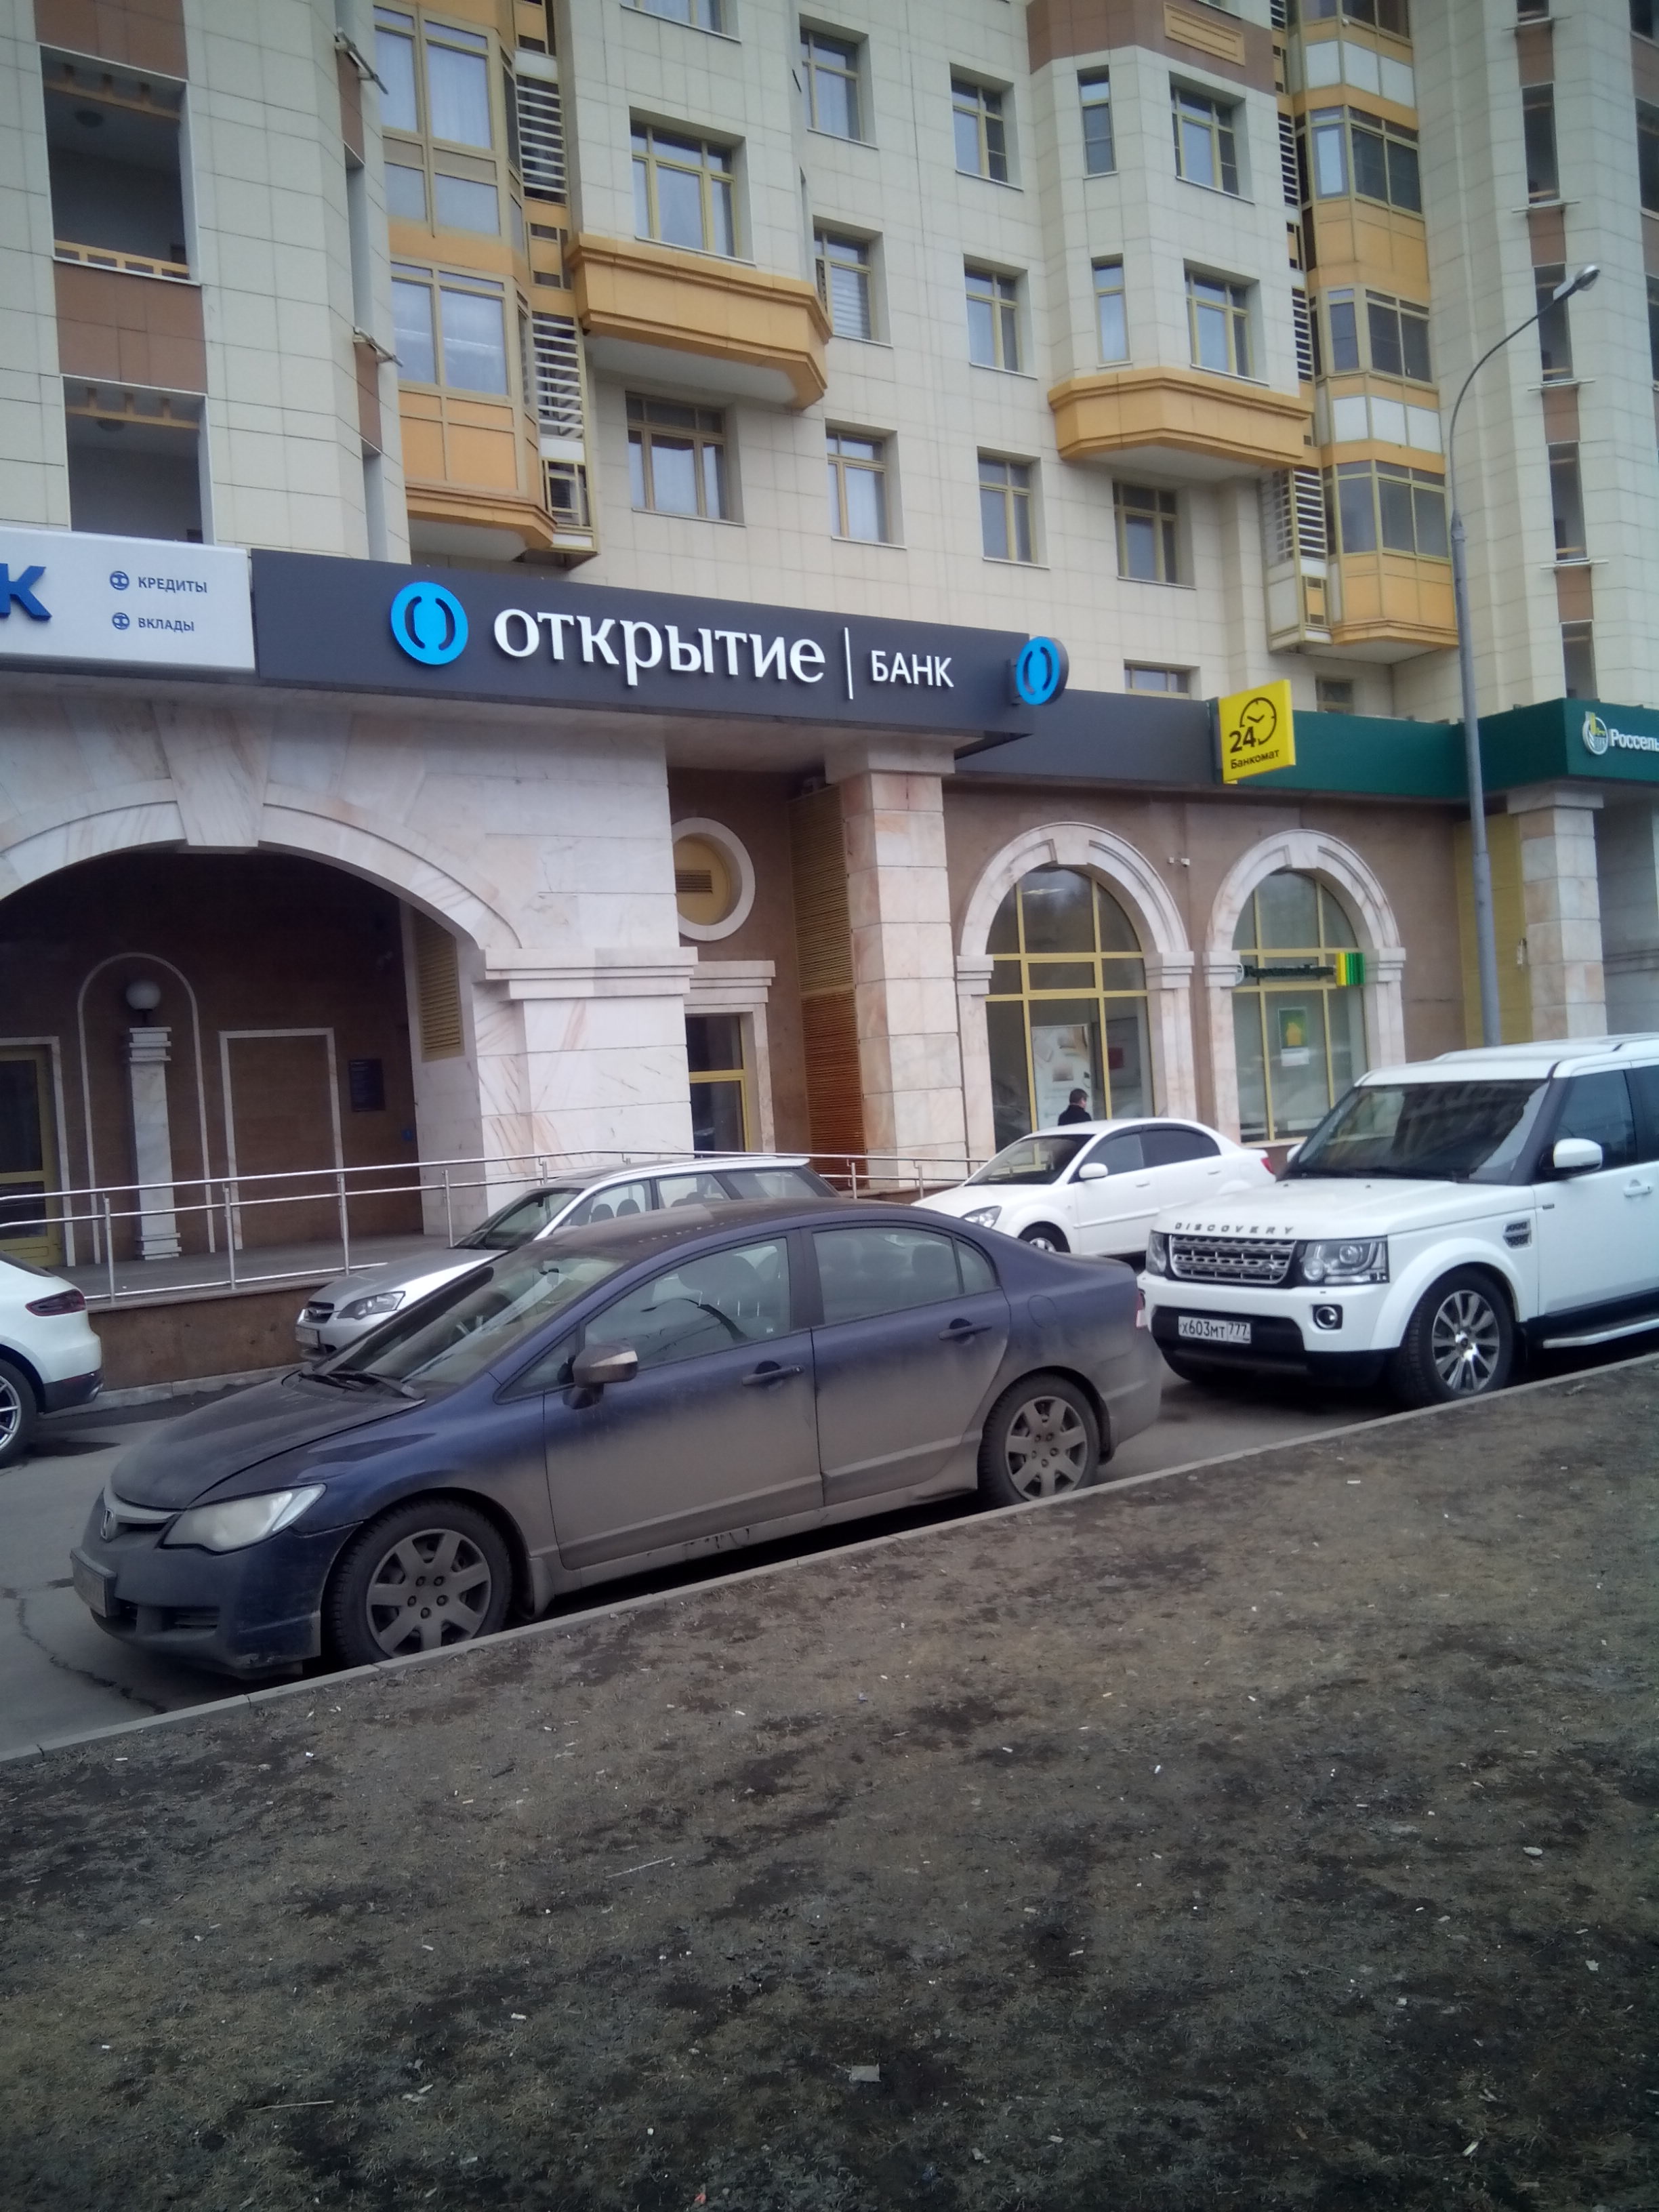 Банк открыта рядом. Банк открытие. Банк открытие рядом. Банк открытие Ордынка. Банк открытие Москва.